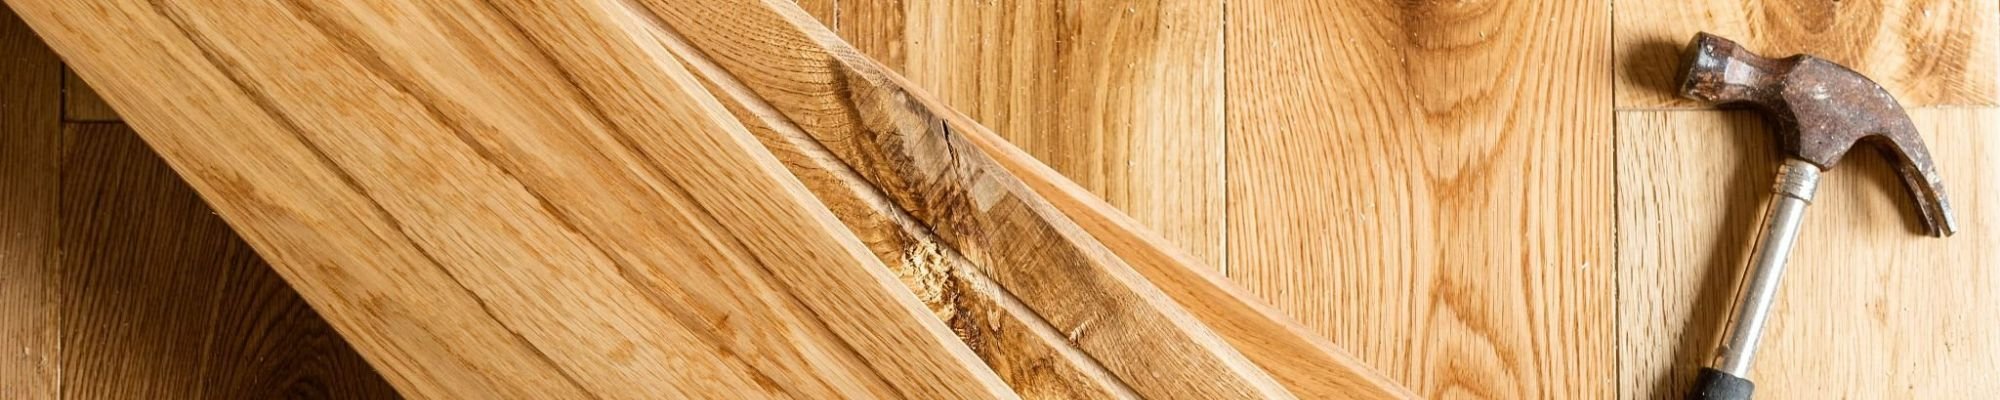 Hammer on wood planks for flooring from The Carpet Shop - Inspired Floors for Less in Benton Harbor, MI